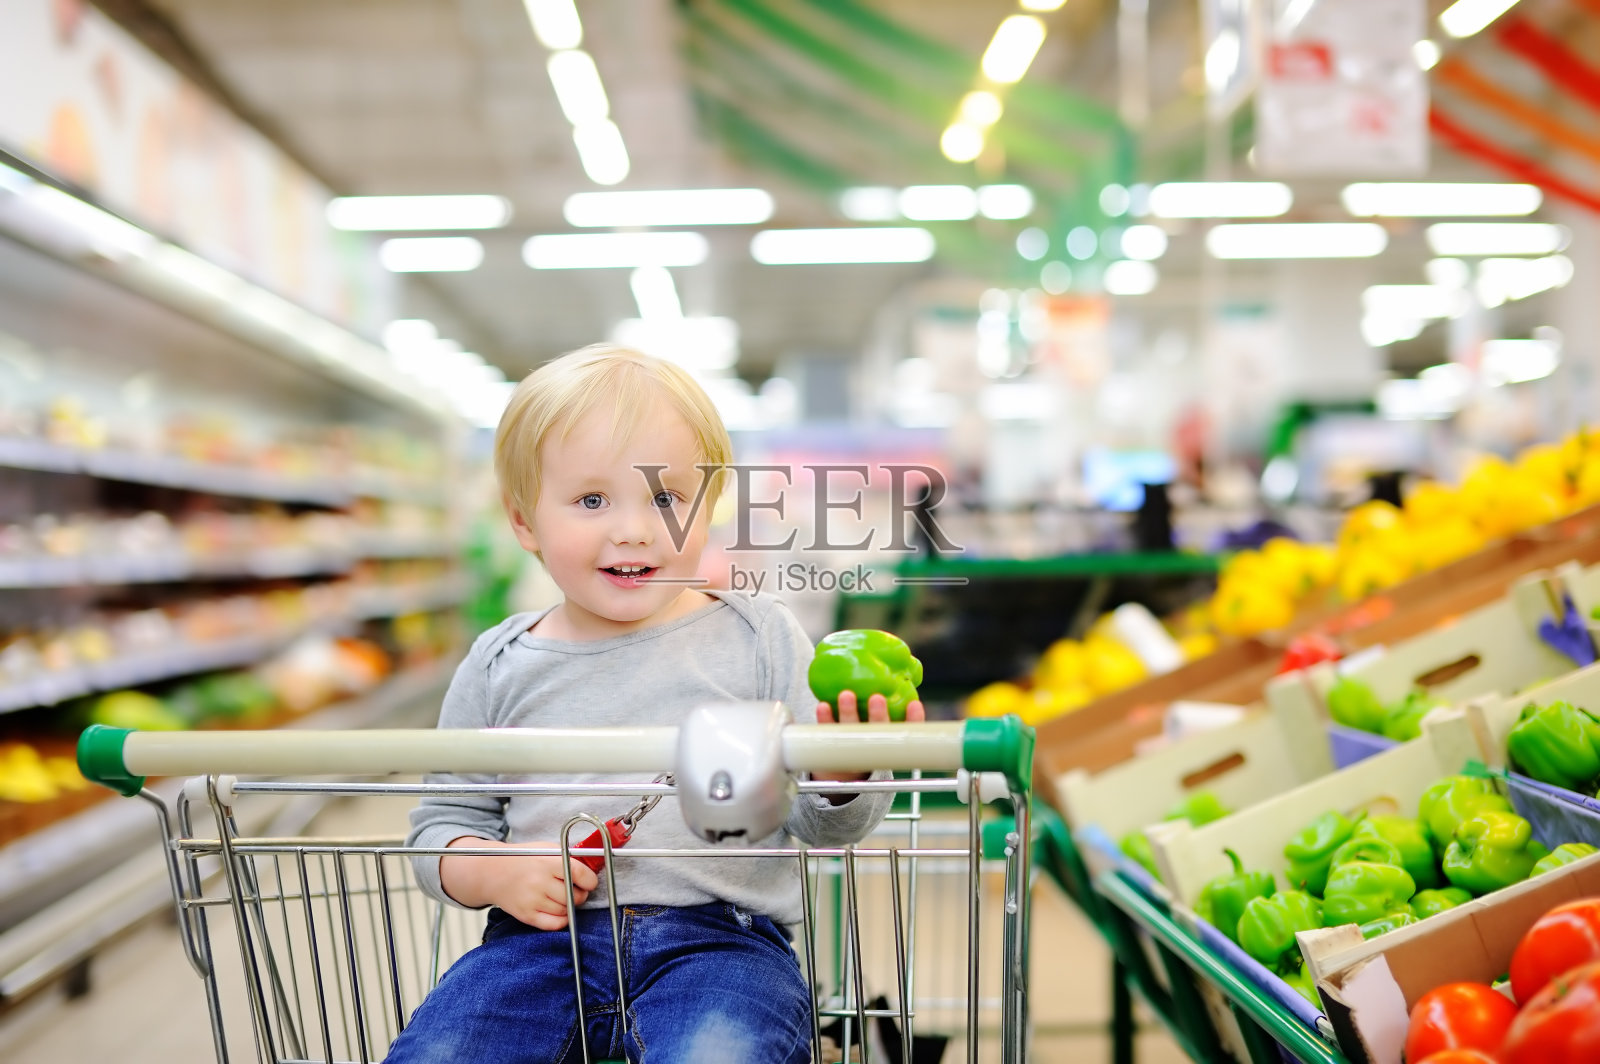 成长初体验 萌娃来当家 横店集团幼儿园开展超市购物实践活动